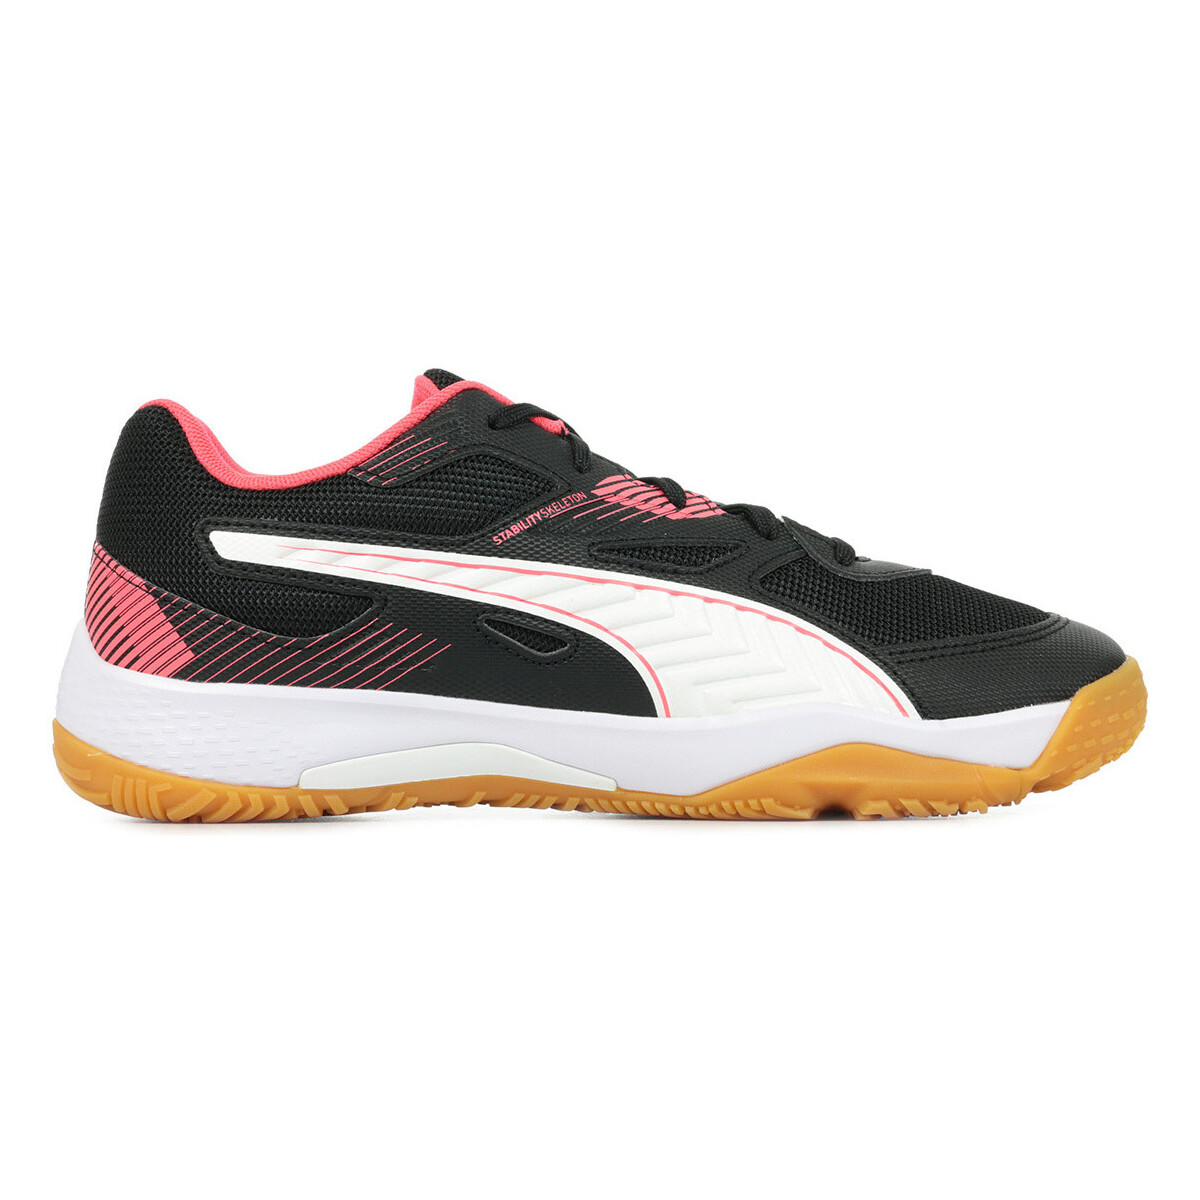 Schuhe Damen Multisportschuhe Puma Solarflash Jr II Schwarz